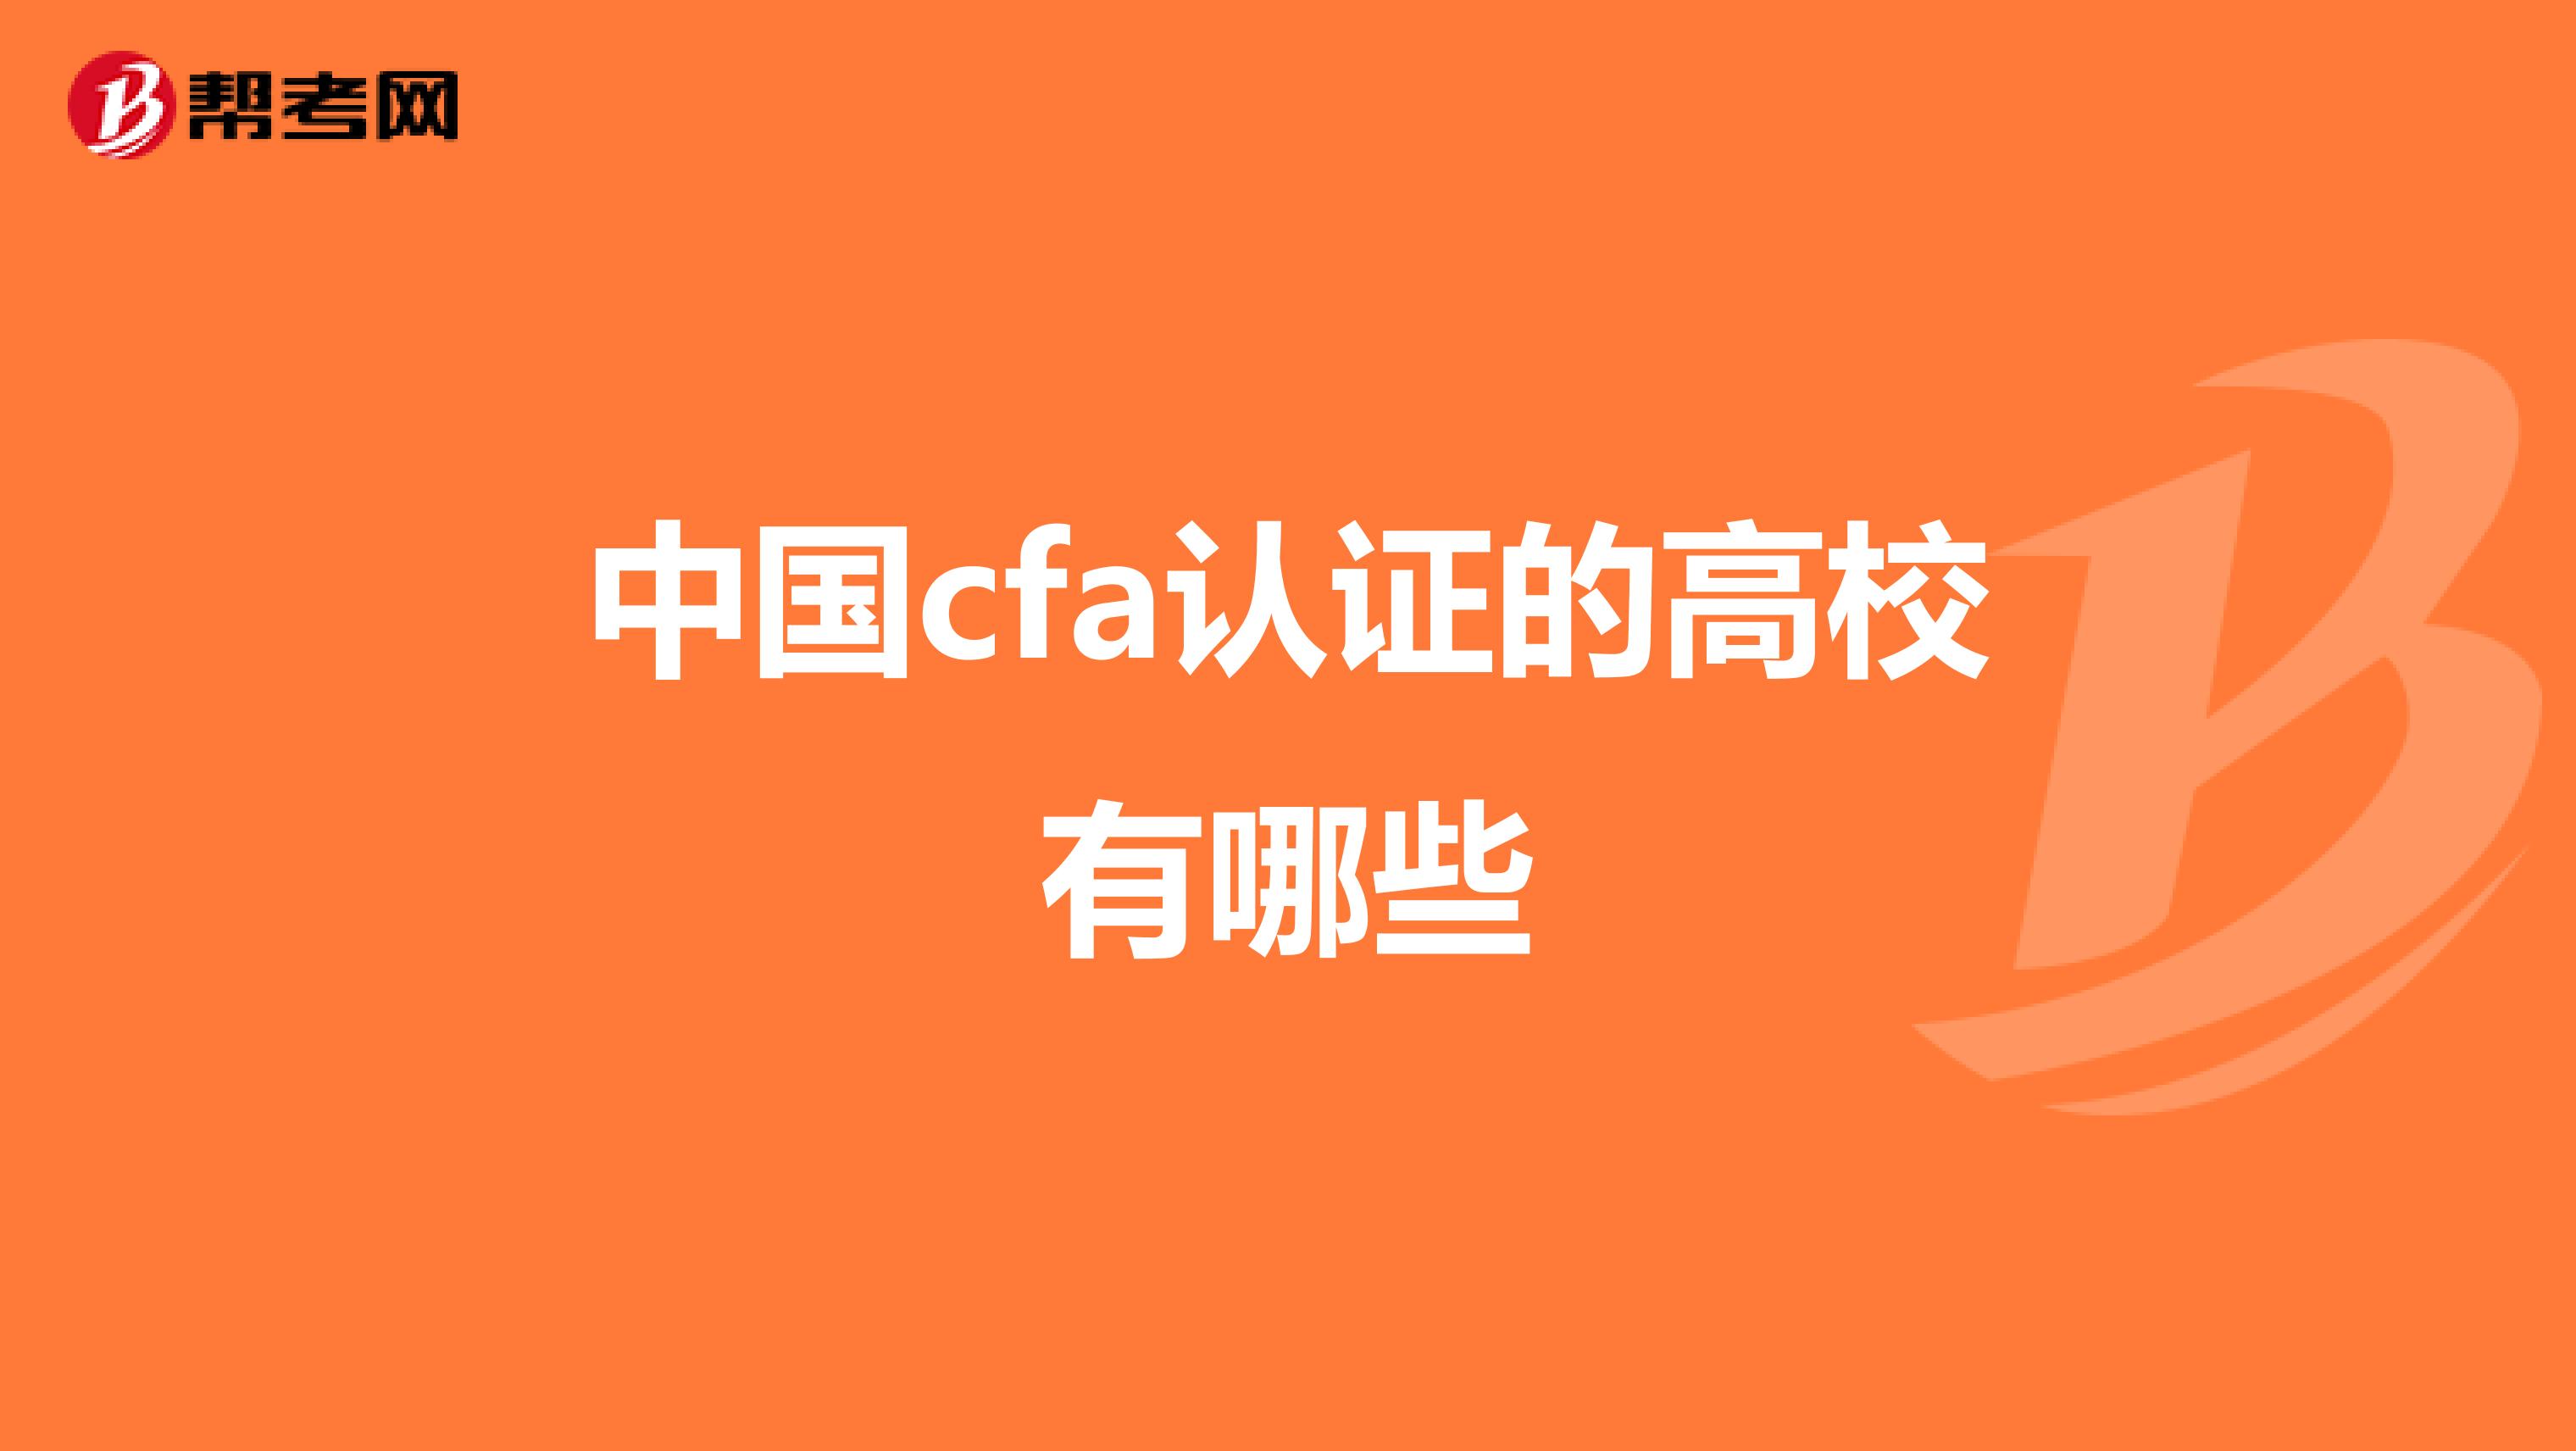 中国cfa认证的高校有哪些